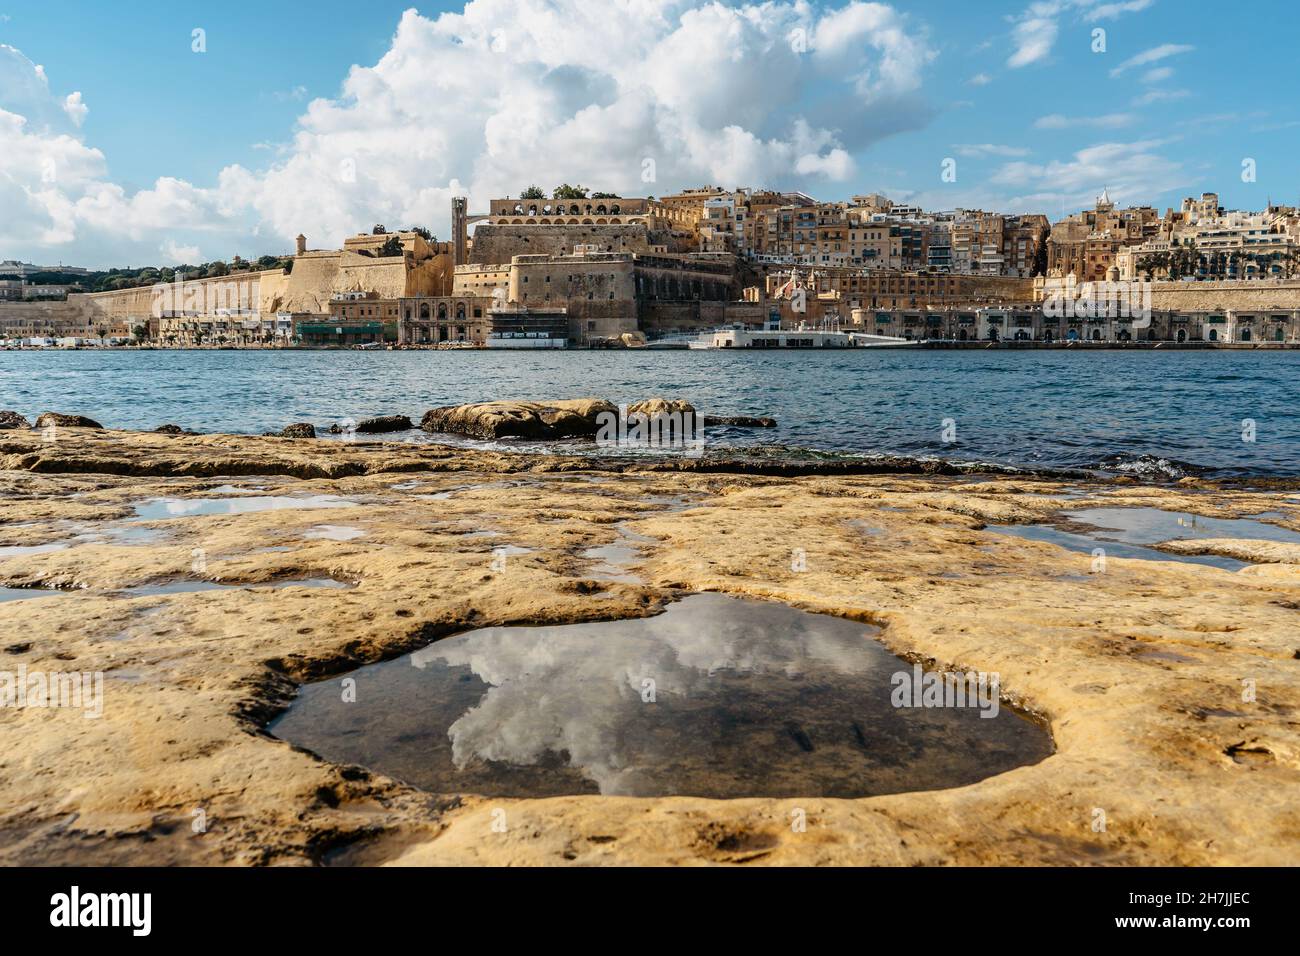 Vista panoramica della Valletta, Malta. Skyline della città dal porto di Birgu Vittoriosa. Paesaggio urbano tranquillo, giorno d'estate soleggiato, nuvole riflesse nell'acqua Foto Stock